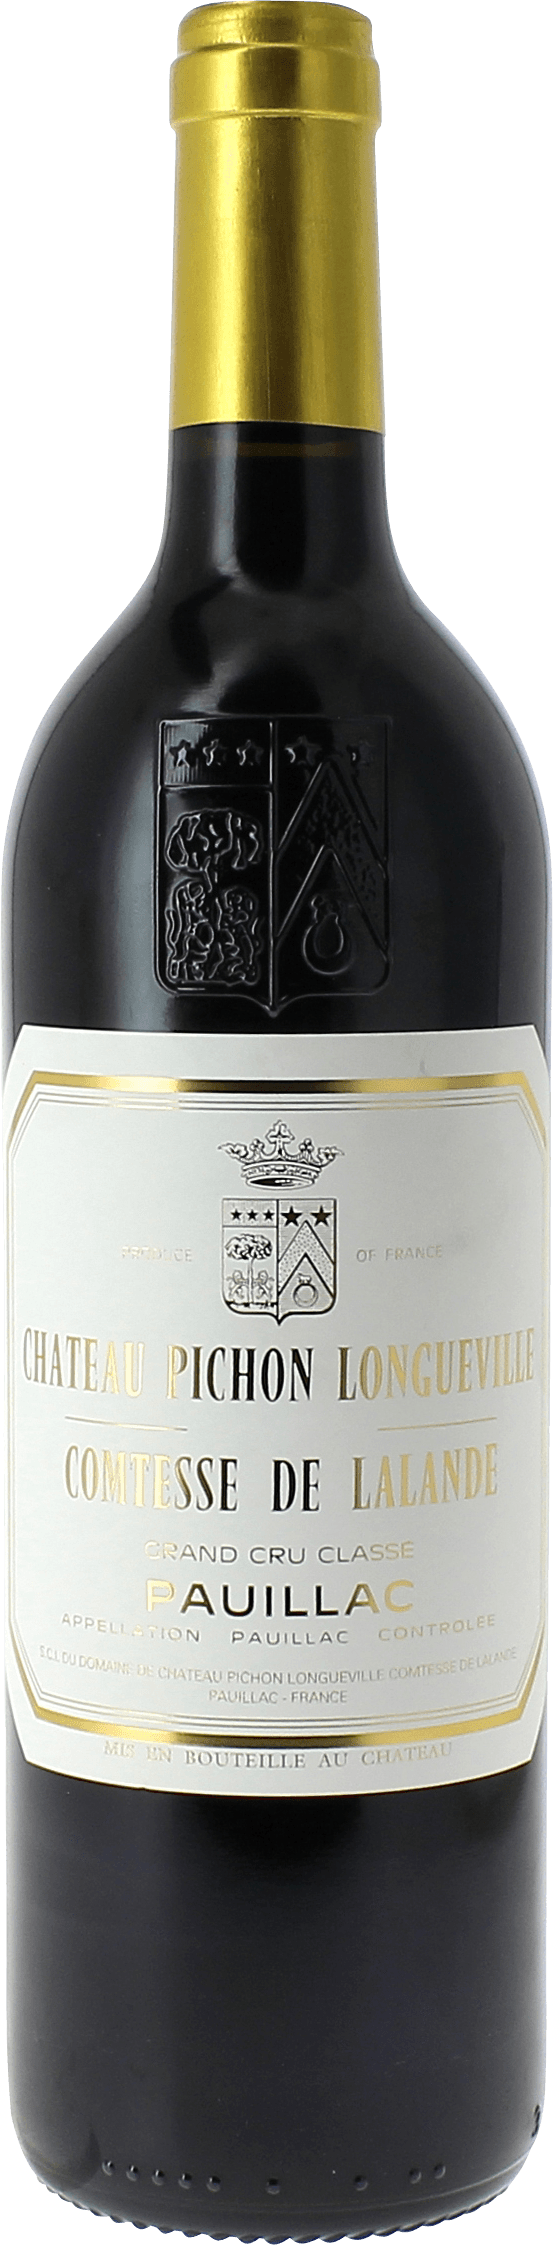 Pichon comtesse de lalande 1993 2me Grand cru class Pauillac, Bordeaux rouge